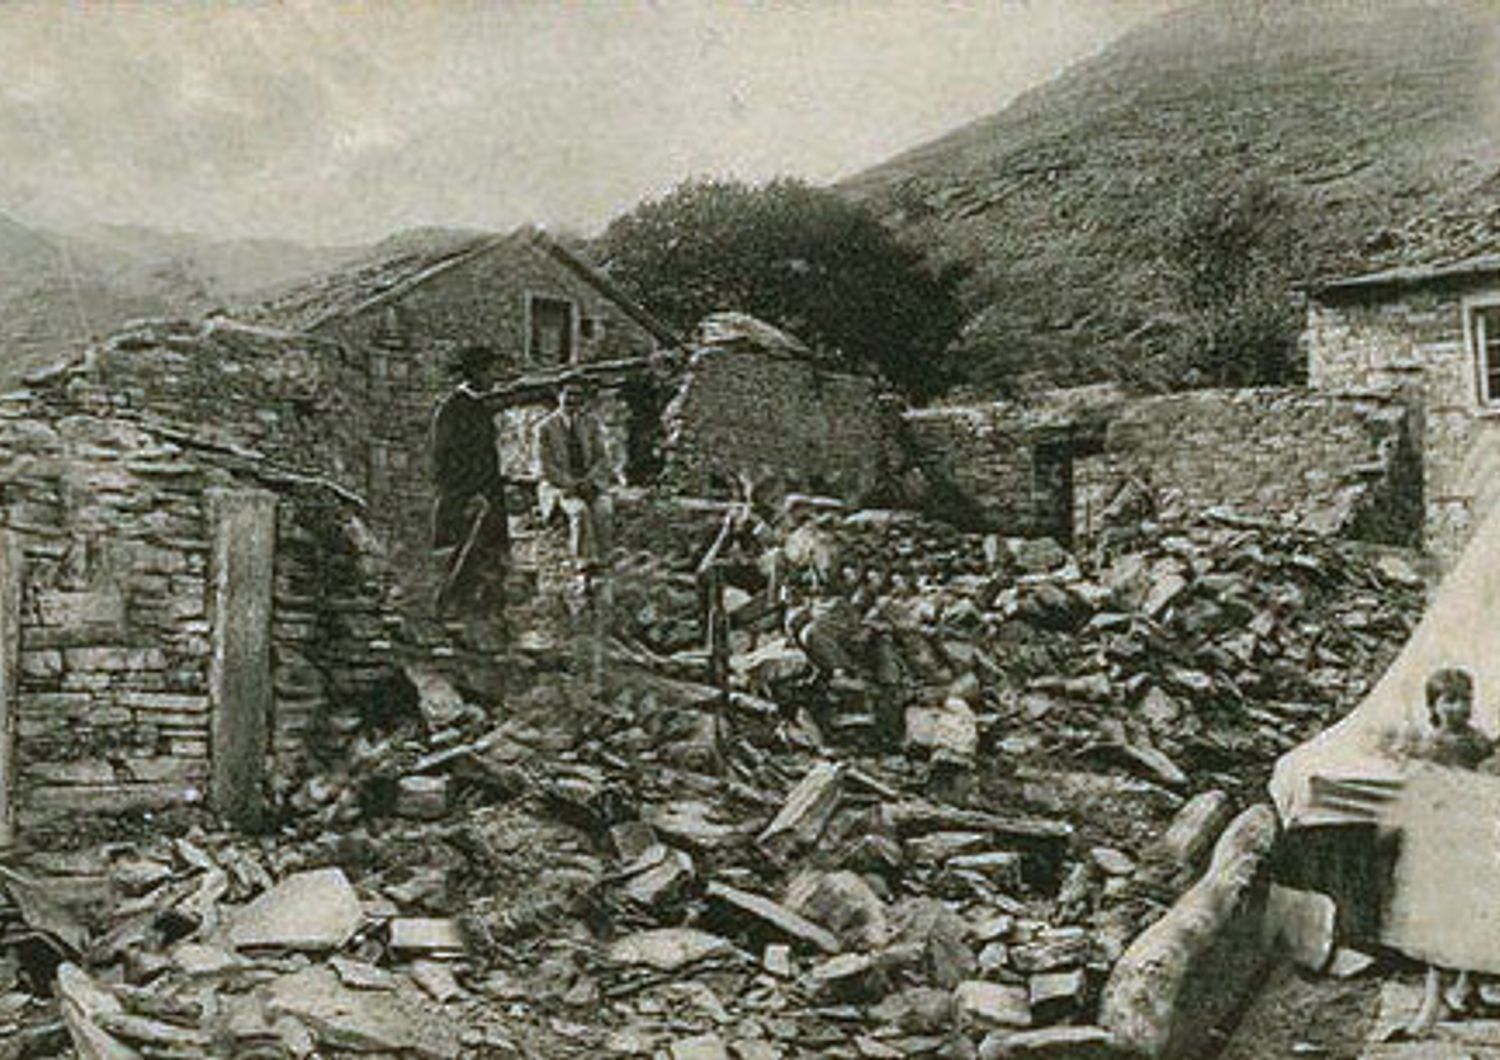 La devastazione del terremoto del 1919 nel Mugello